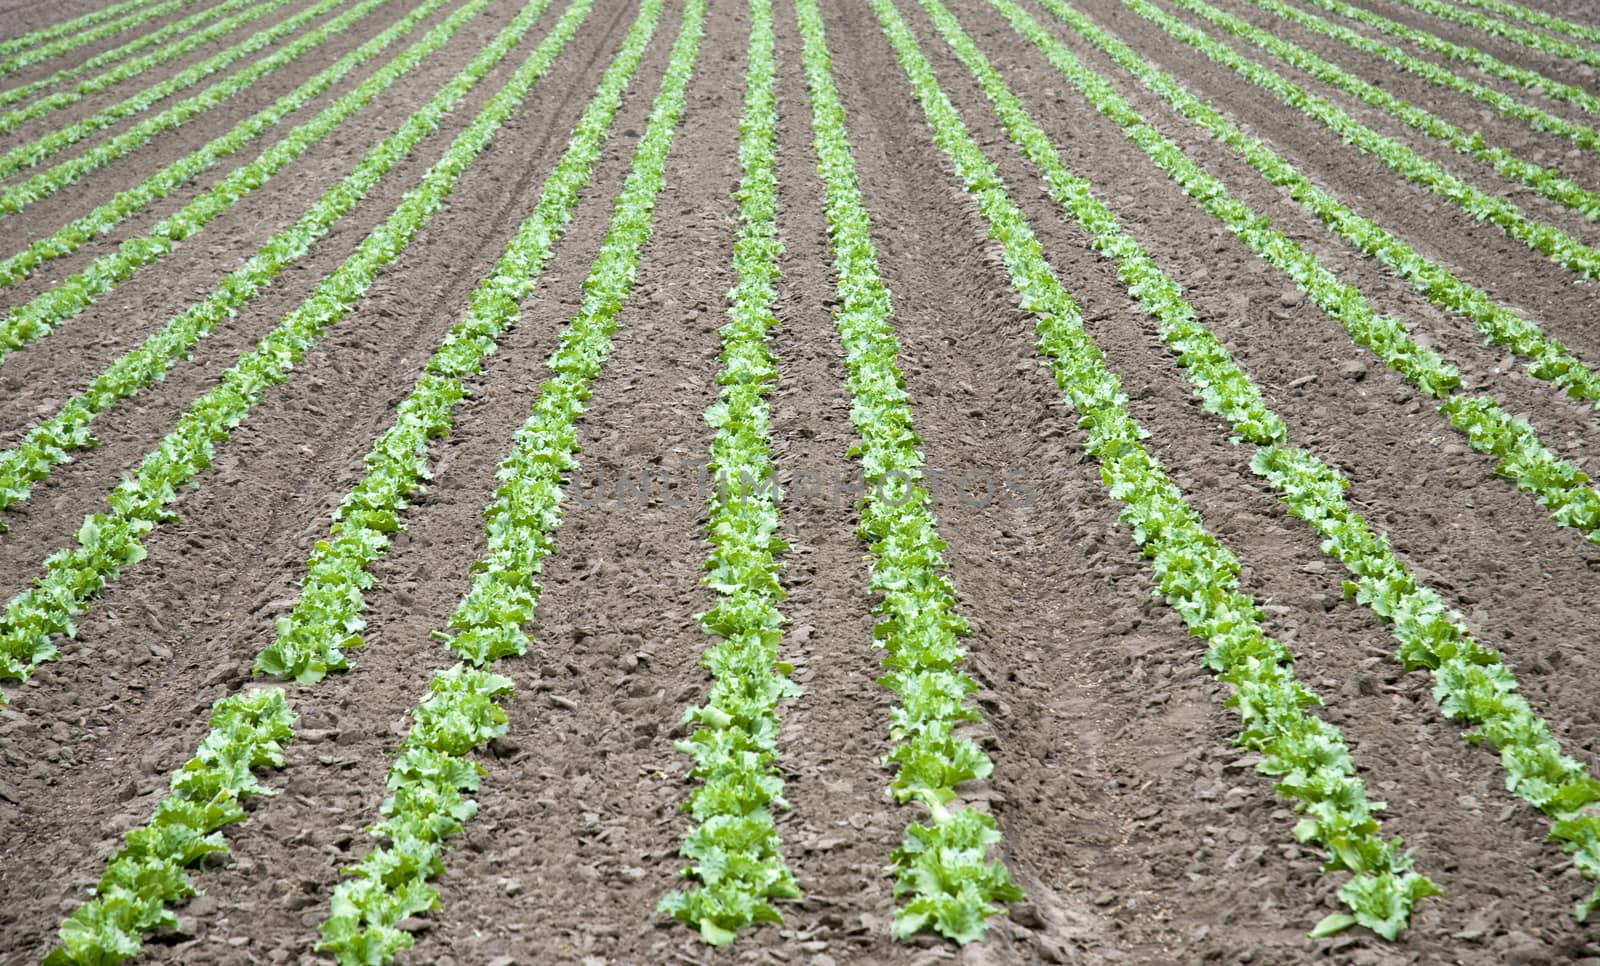 A field growing a crop of lettuce